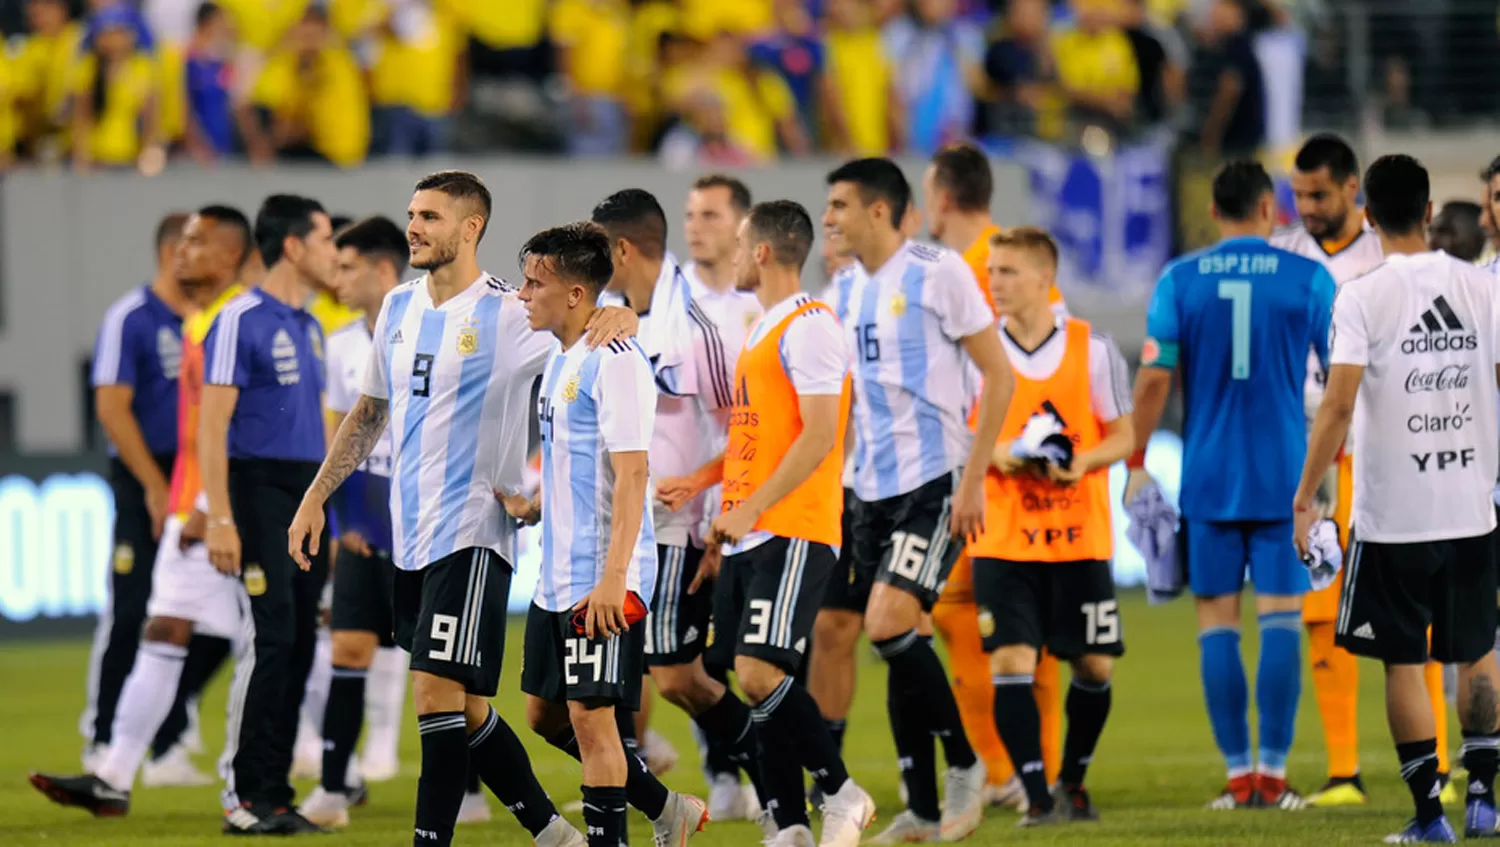 NI ENTRE LOS 10 MEJORES. La Selección Argentina pierde lugares en el ranking mundial.